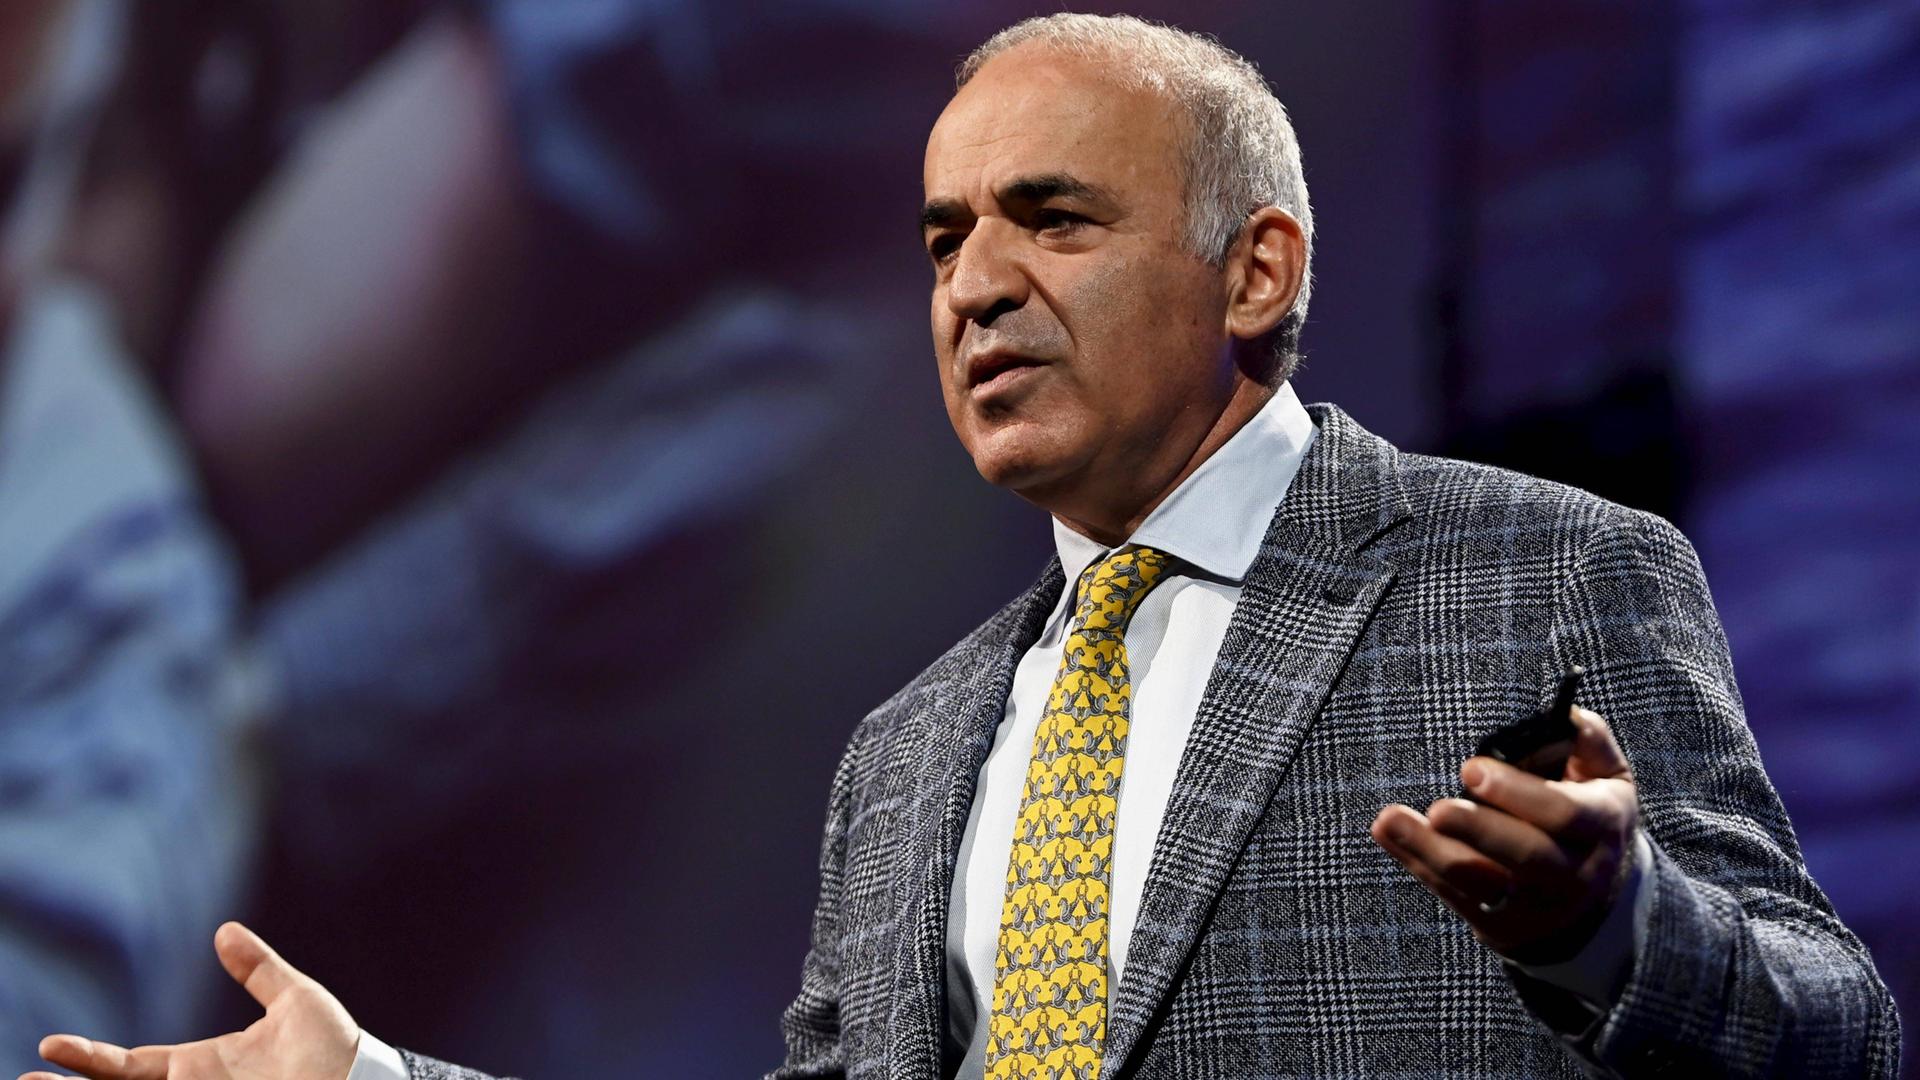 Garri Kasparow steht auf einer Bühne mit ausgebreiteten Händen